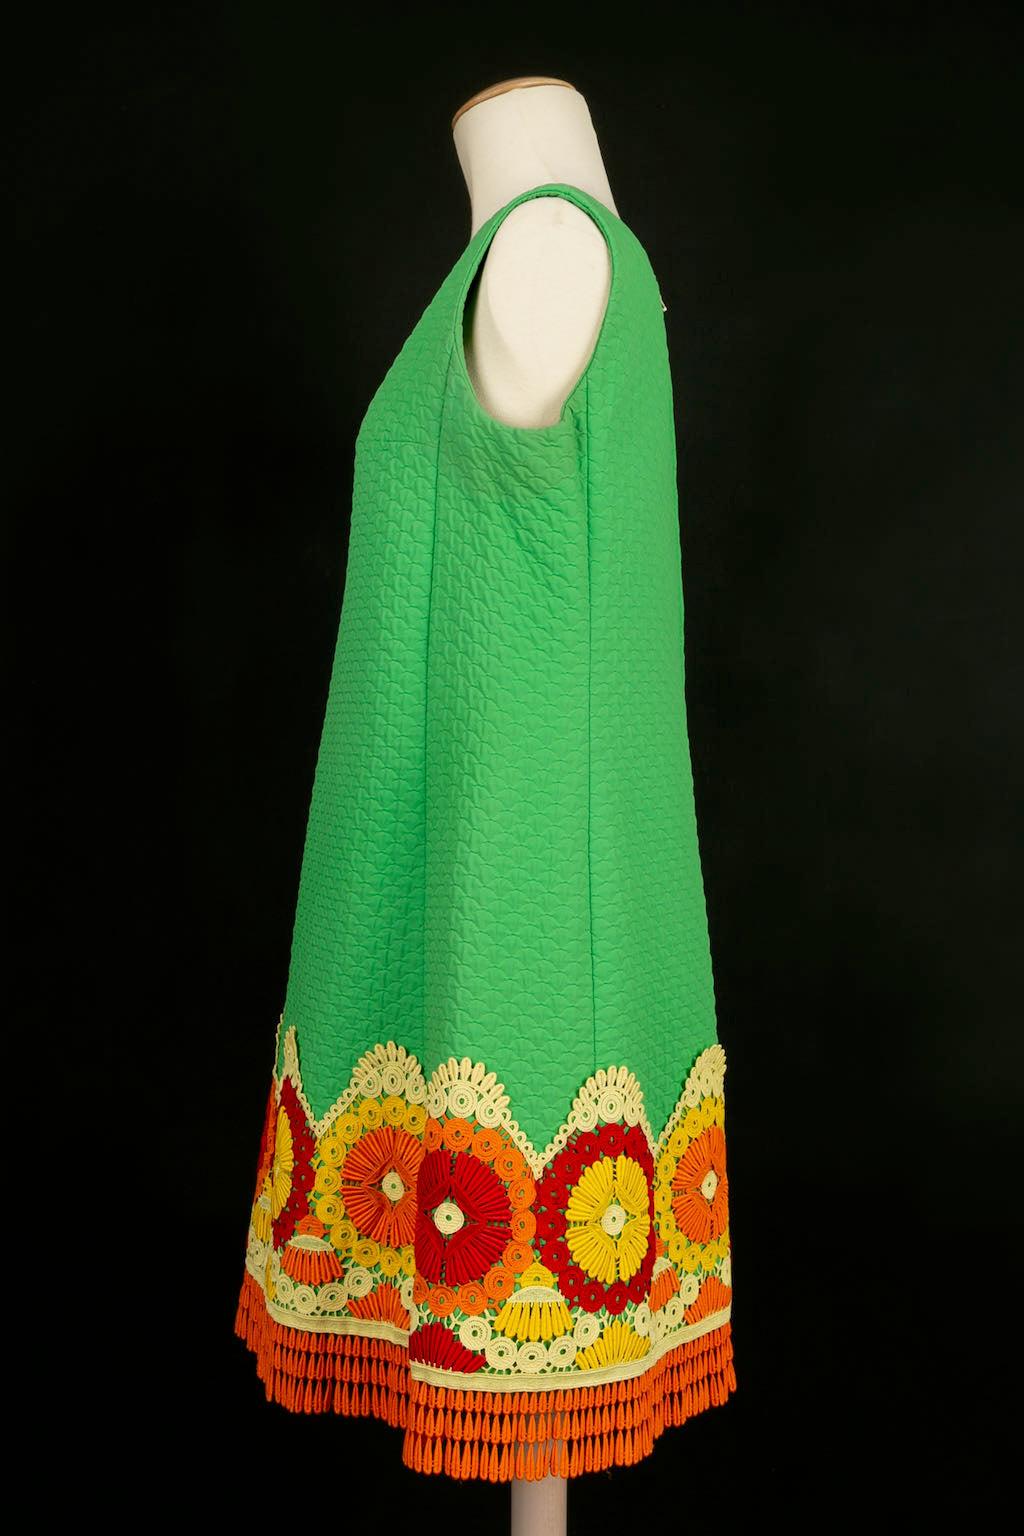 Yves Saint Laurent - Grünes Trapezkleid aus Baumwolle mit roten, orangen und gelben Guipure-Applikationen. Modell aus den Jahren 1966-67. Kein Label der Größe oder Zusammensetzung, es entspricht einem 40FR. 
Vorhandensein von Verfärbungen auf dem